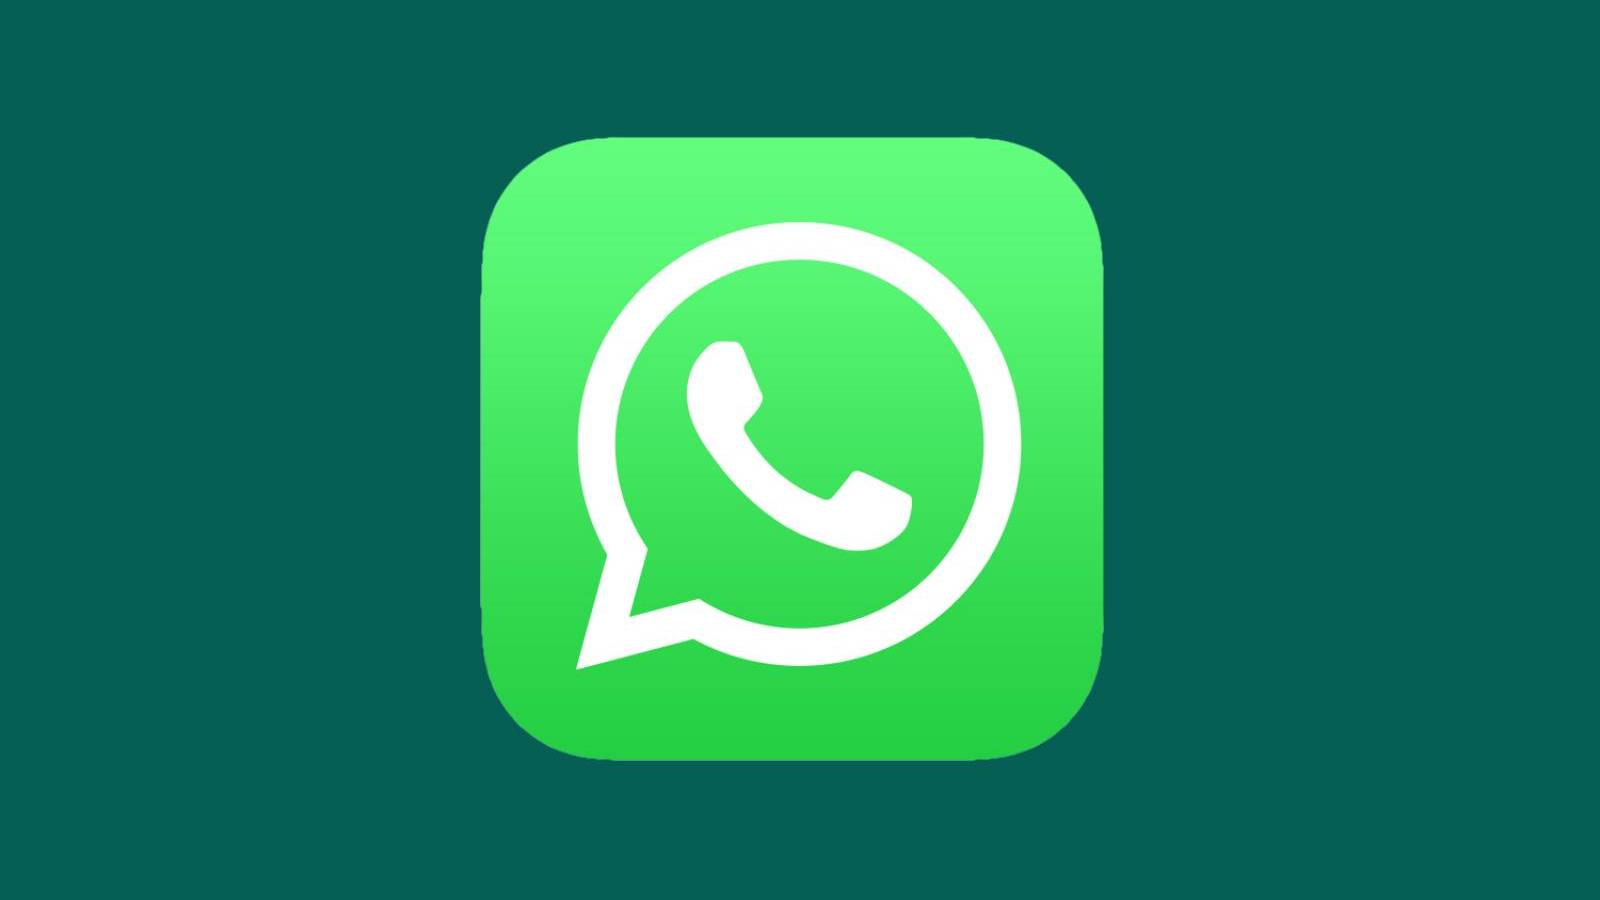 Confirmación OFICIAL de WhatsApp de nuevos cambios en iPhone y Android